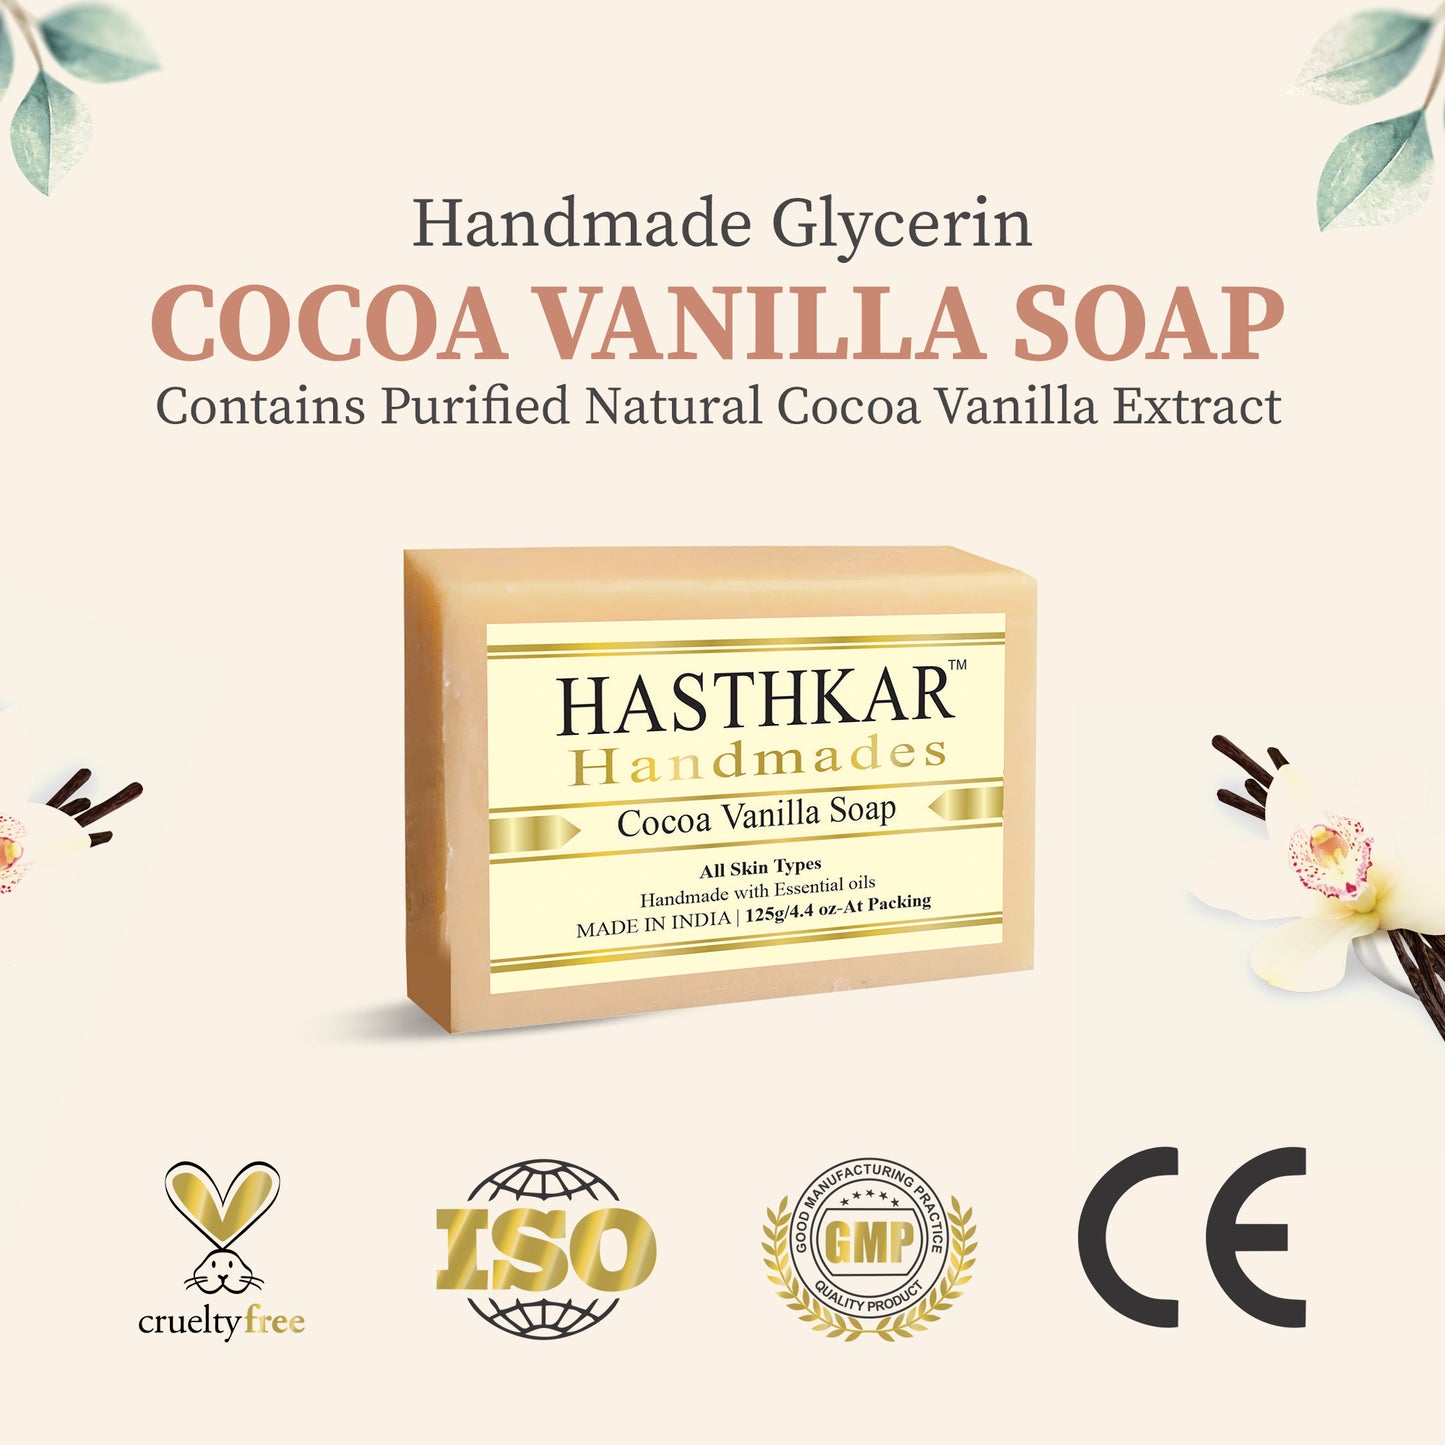 Hasthkar Handmades Glycerine Cocoa vanila Soap 125gm Pack of 4